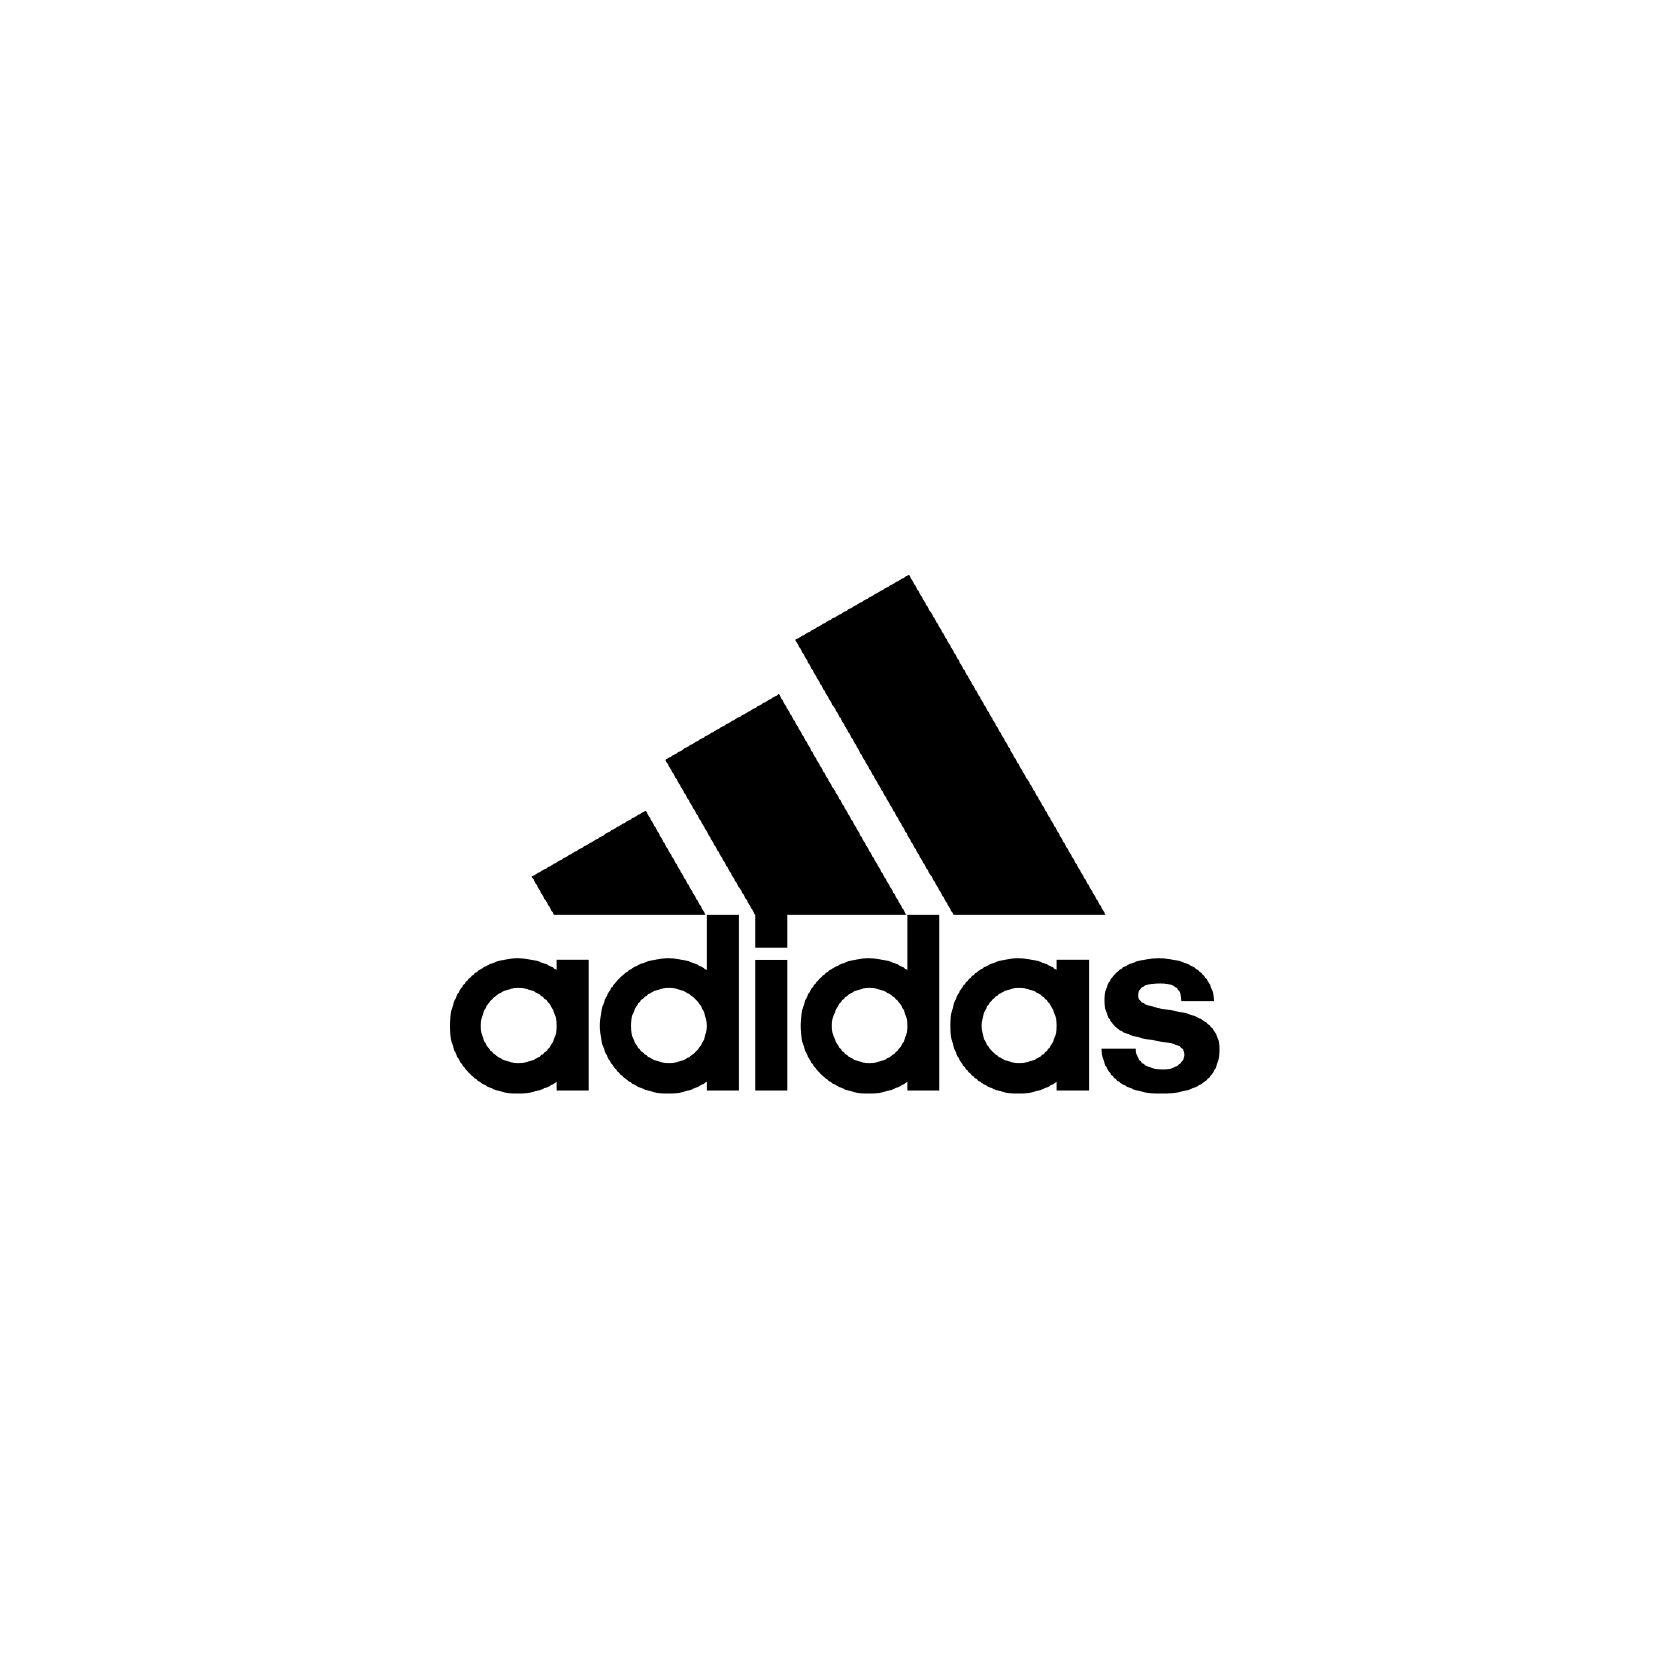 Адидас рядом. Адидас 2022. Adidas значок. Фирменный знак адидас. Логотип адидас белый.